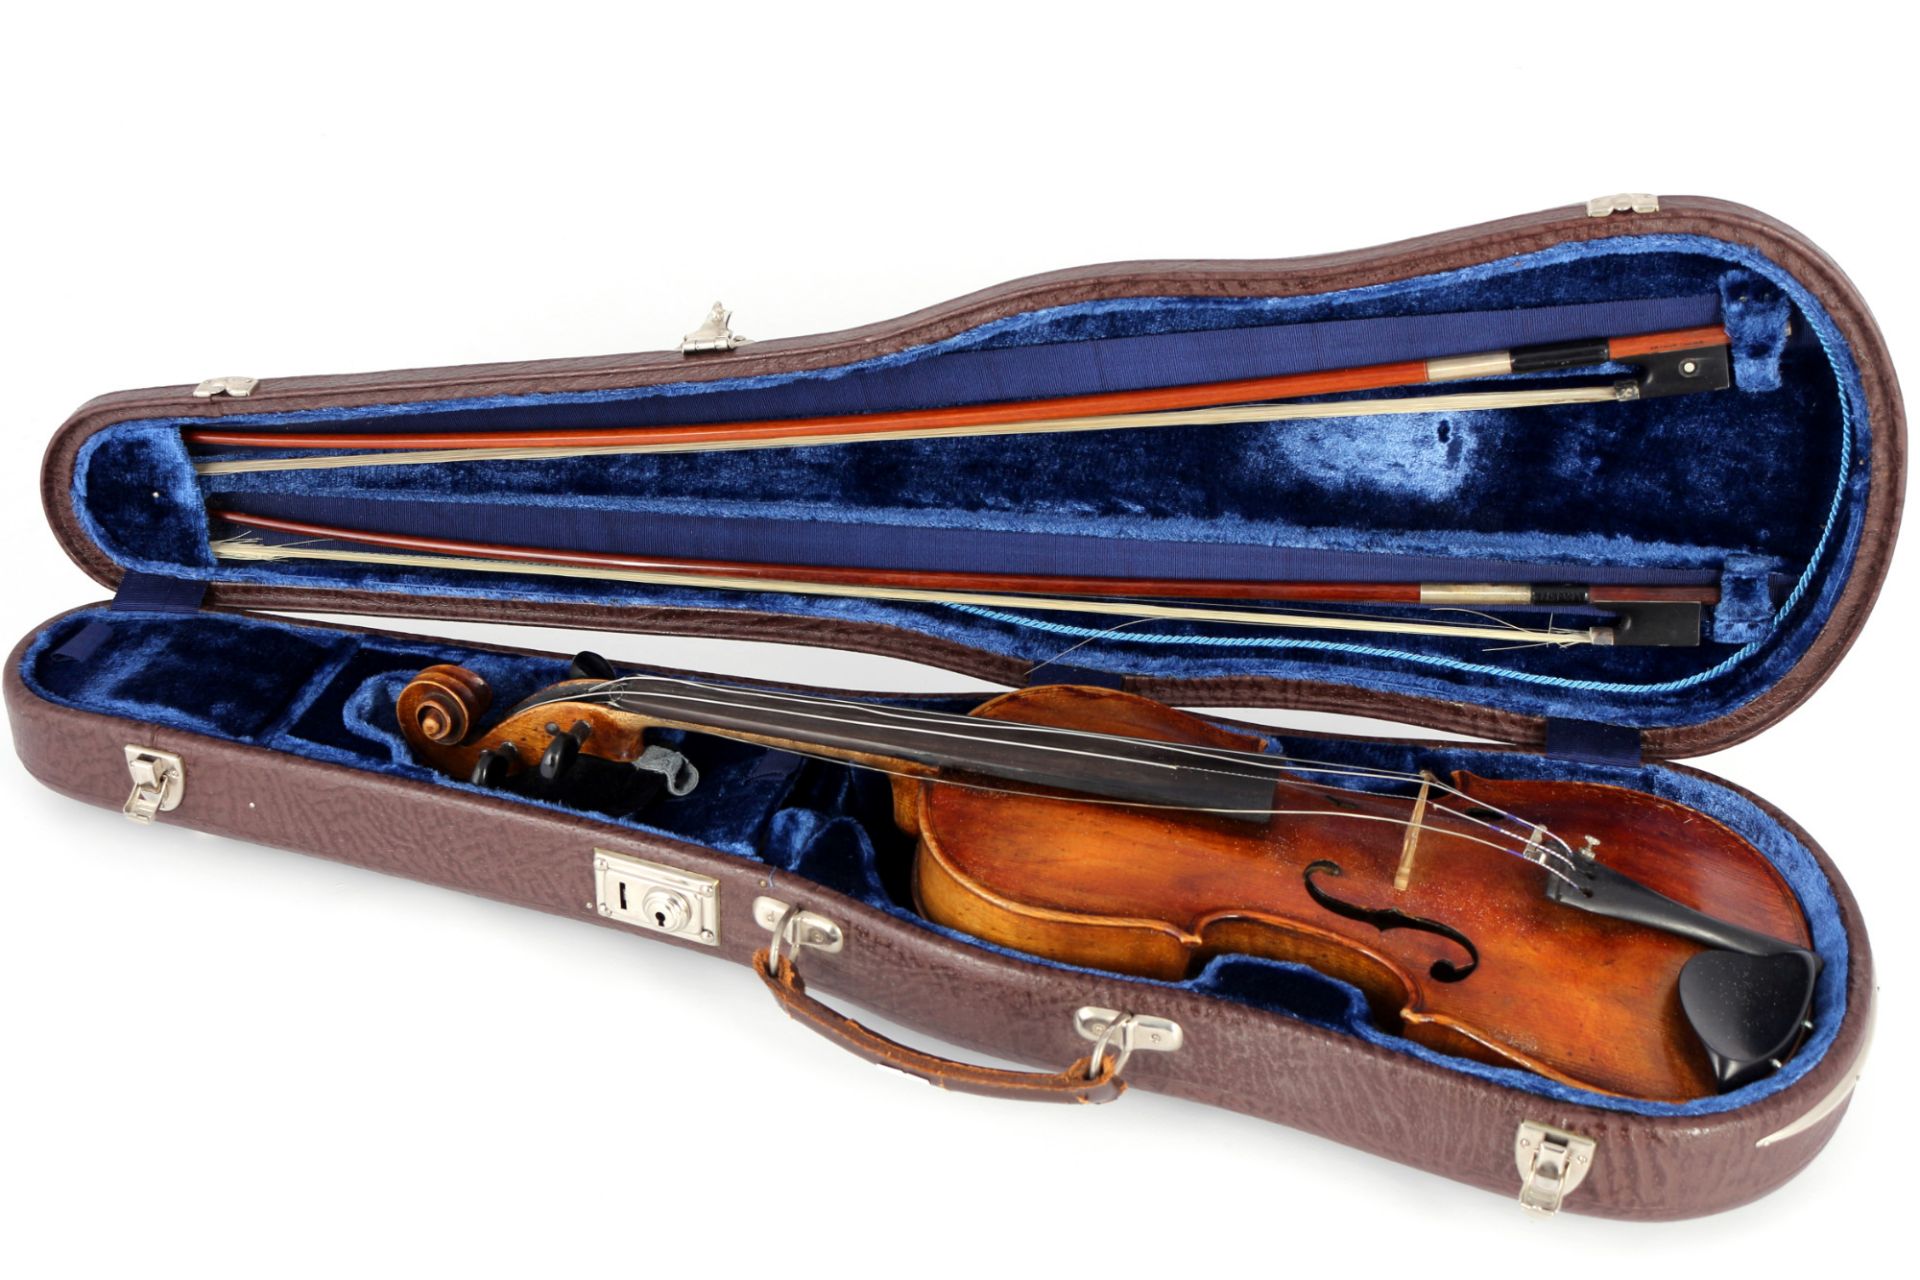 Violin 4/4 with case and 2 bows, Violine mit Koffer und 2 Bögen,